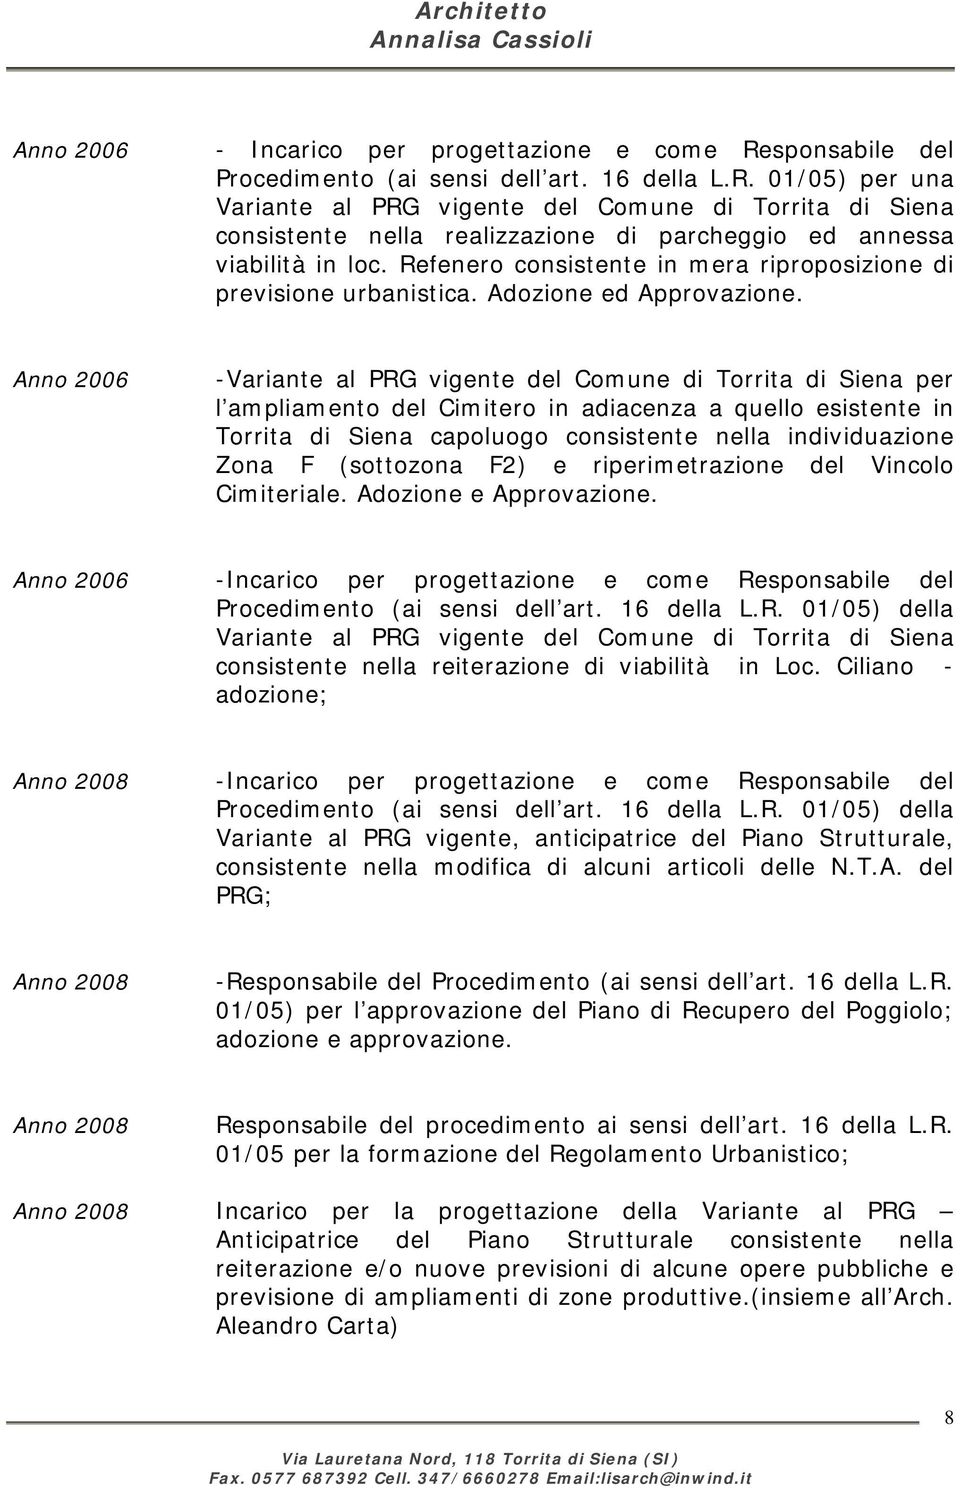 Anno 2006 -Variante al PRG vigente del Comune di Torrita di Siena per l ampliamento del Cimitero in adiacenza a quello esistente in Torrita di Siena capoluogo consistente nella individuazione Zona F